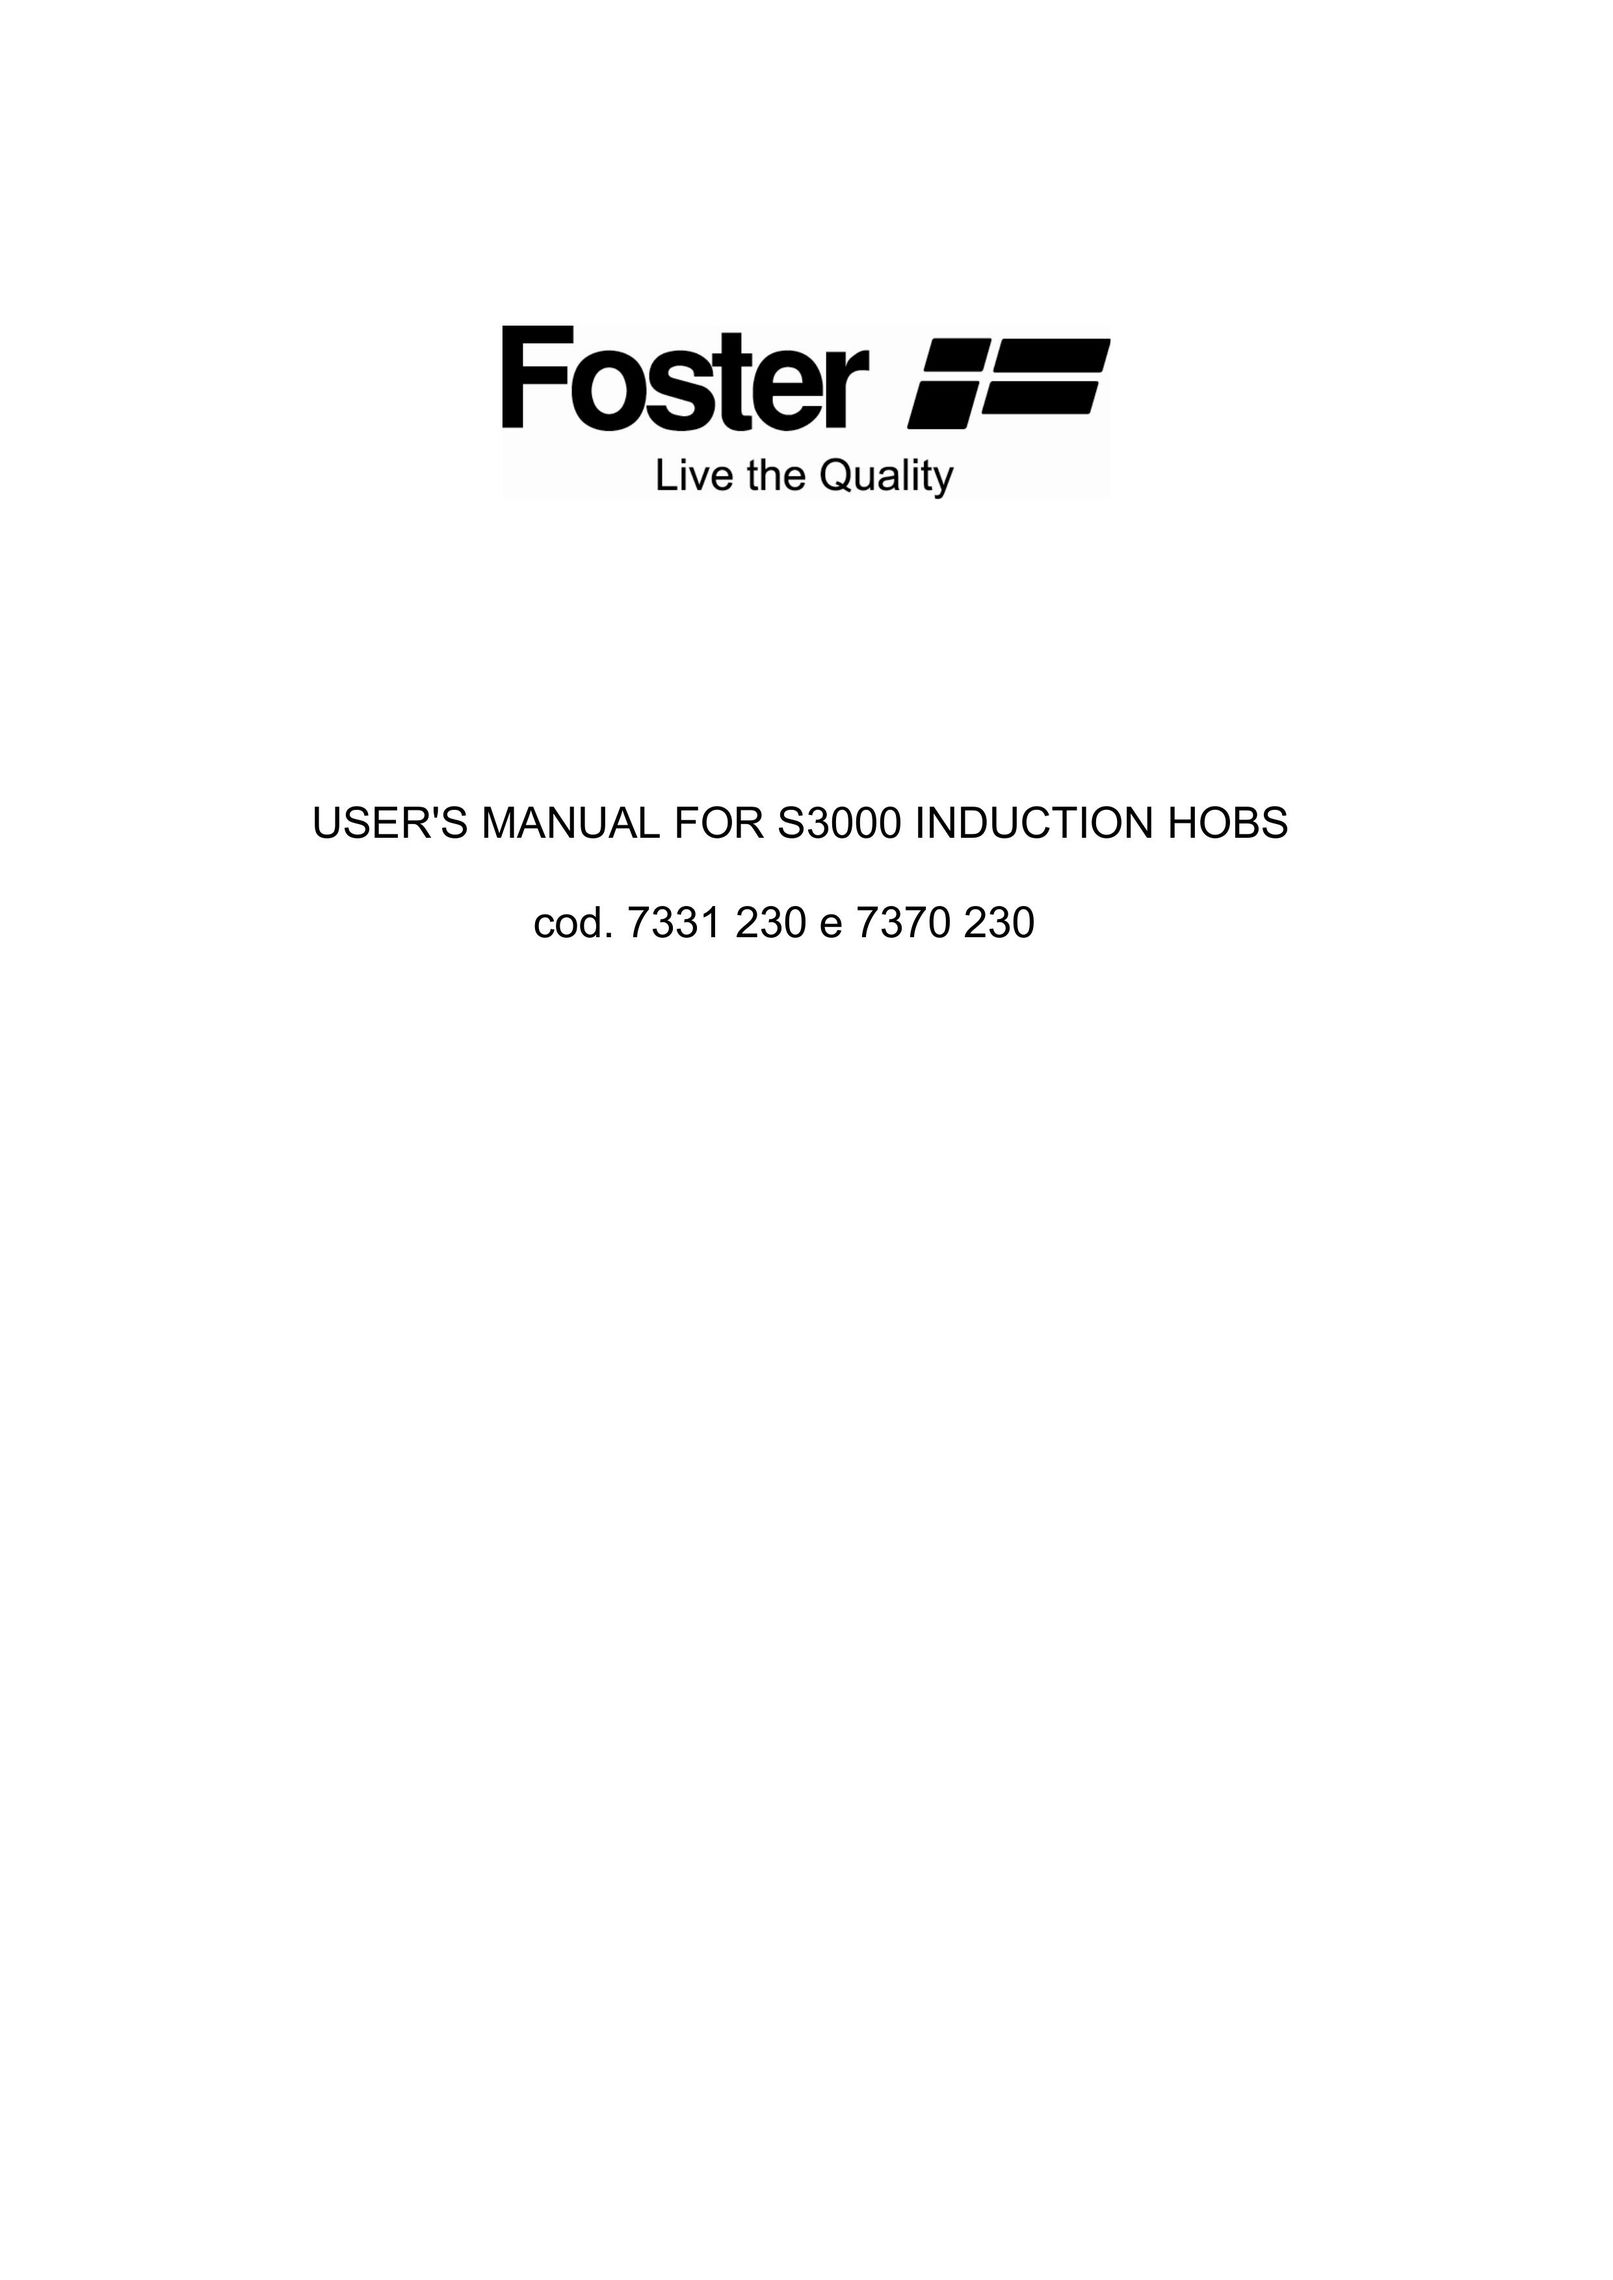 Foster e 7370 230 Cooktop User Manual